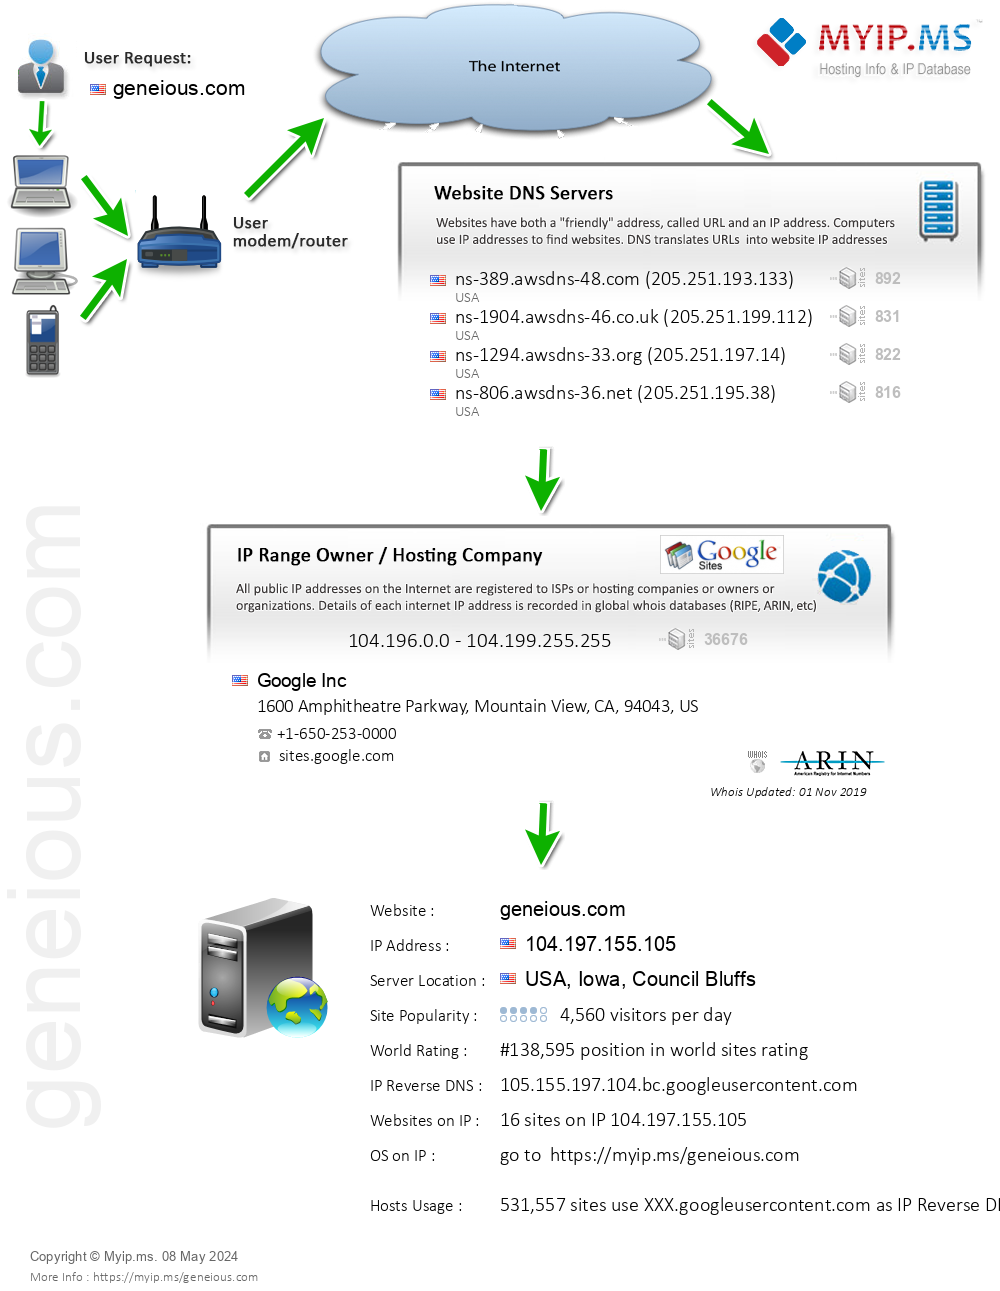 Geneious.com - Website Hosting Visual IP Diagram